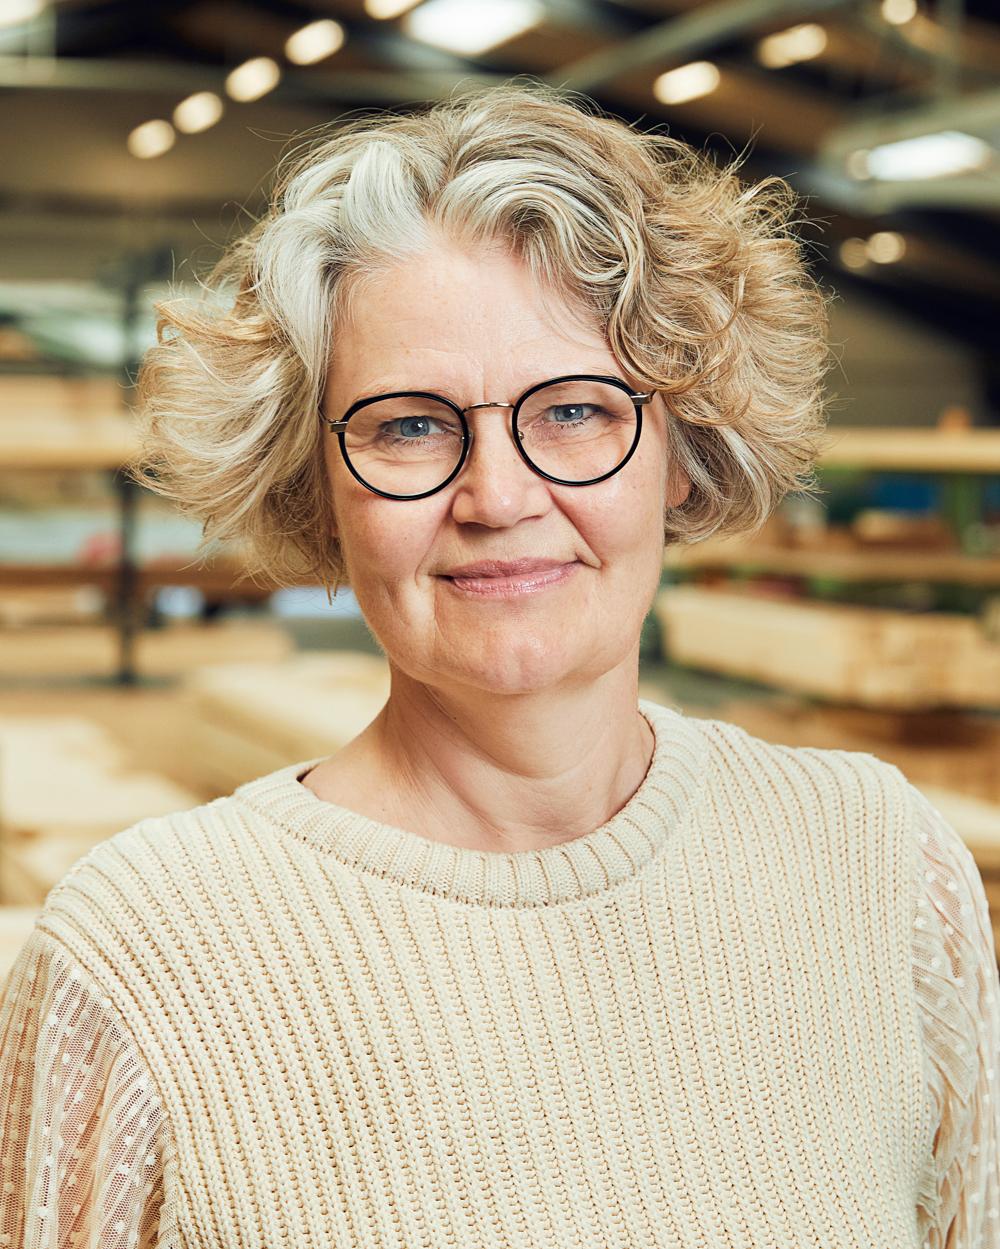 Birgitte Clausen indtræder i Taasinge Elementers direktion i juni 2022. Hun har erfaring med ledelse, udvikling og organisering fra stillinger i Lego, Siemens og Velux.